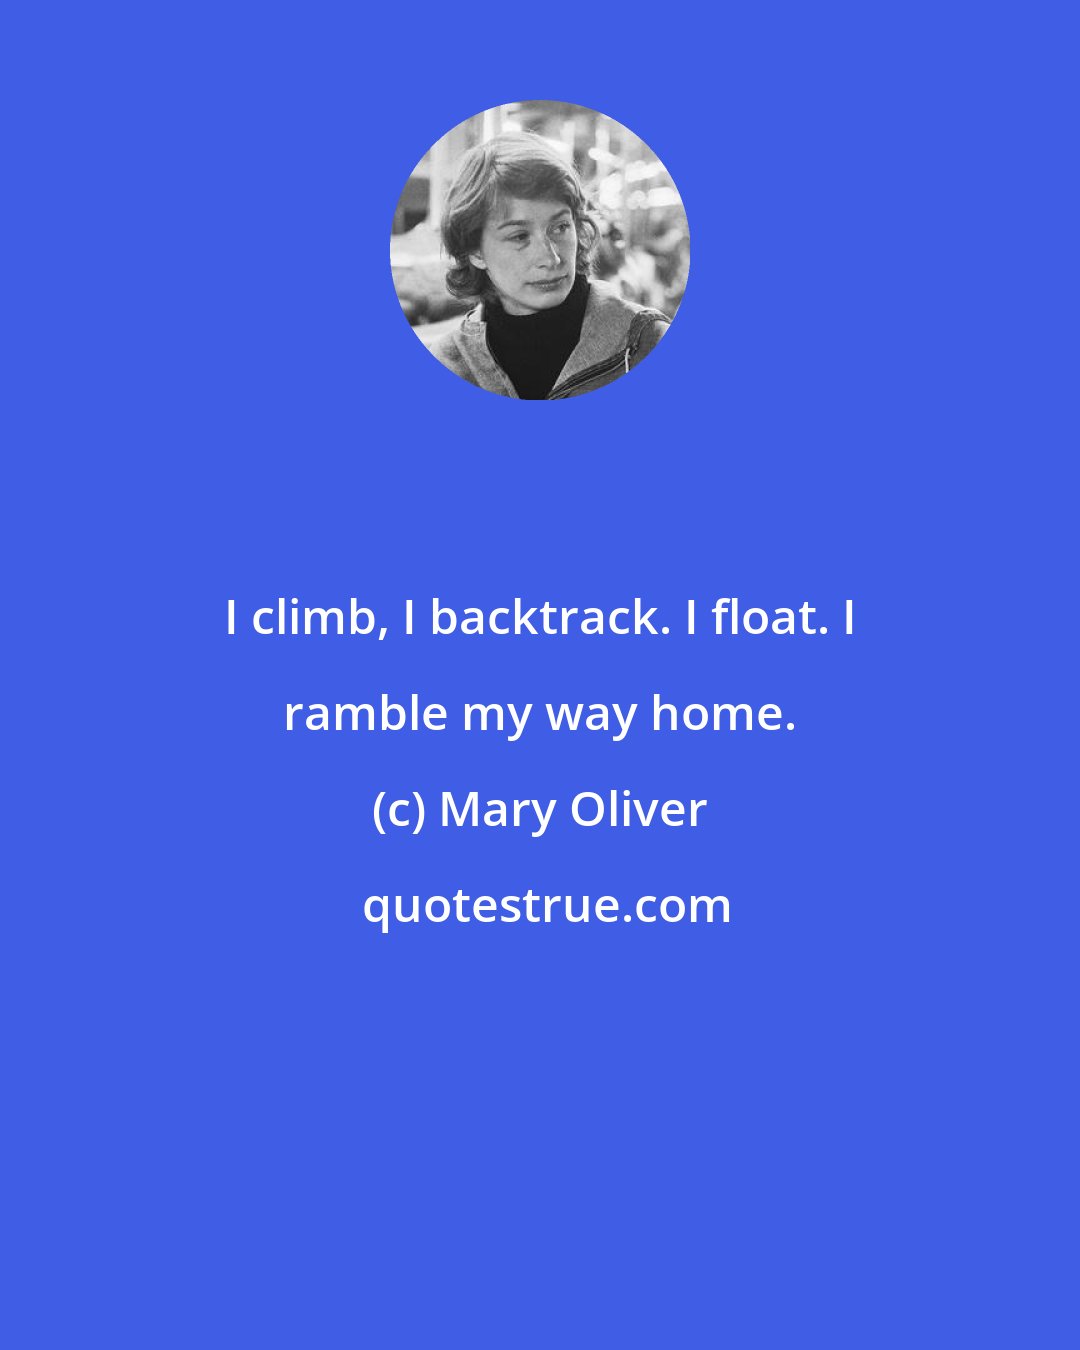 Mary Oliver: I climb, I backtrack. I float. I ramble my way home.